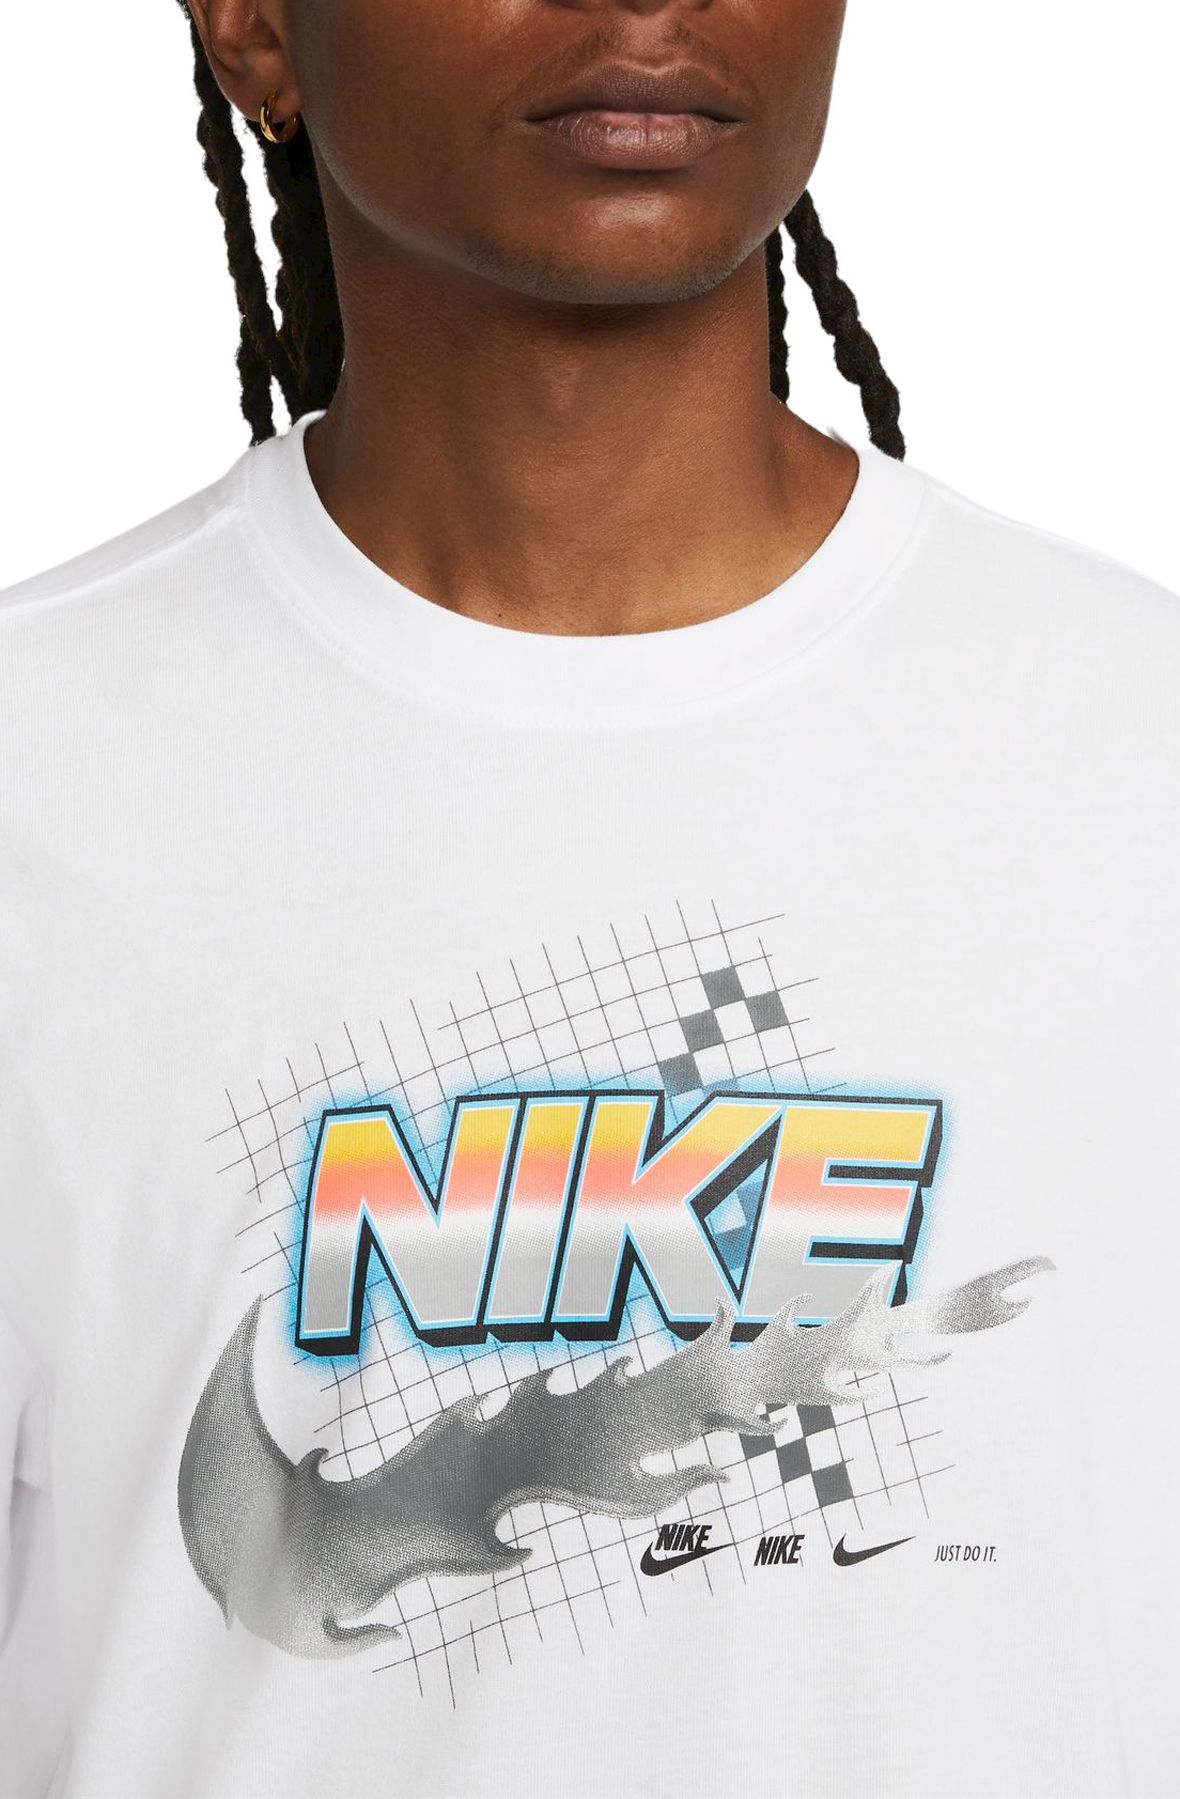 NIKE Sportswear Racing T-Shirt DR7994 100 - Shiekh